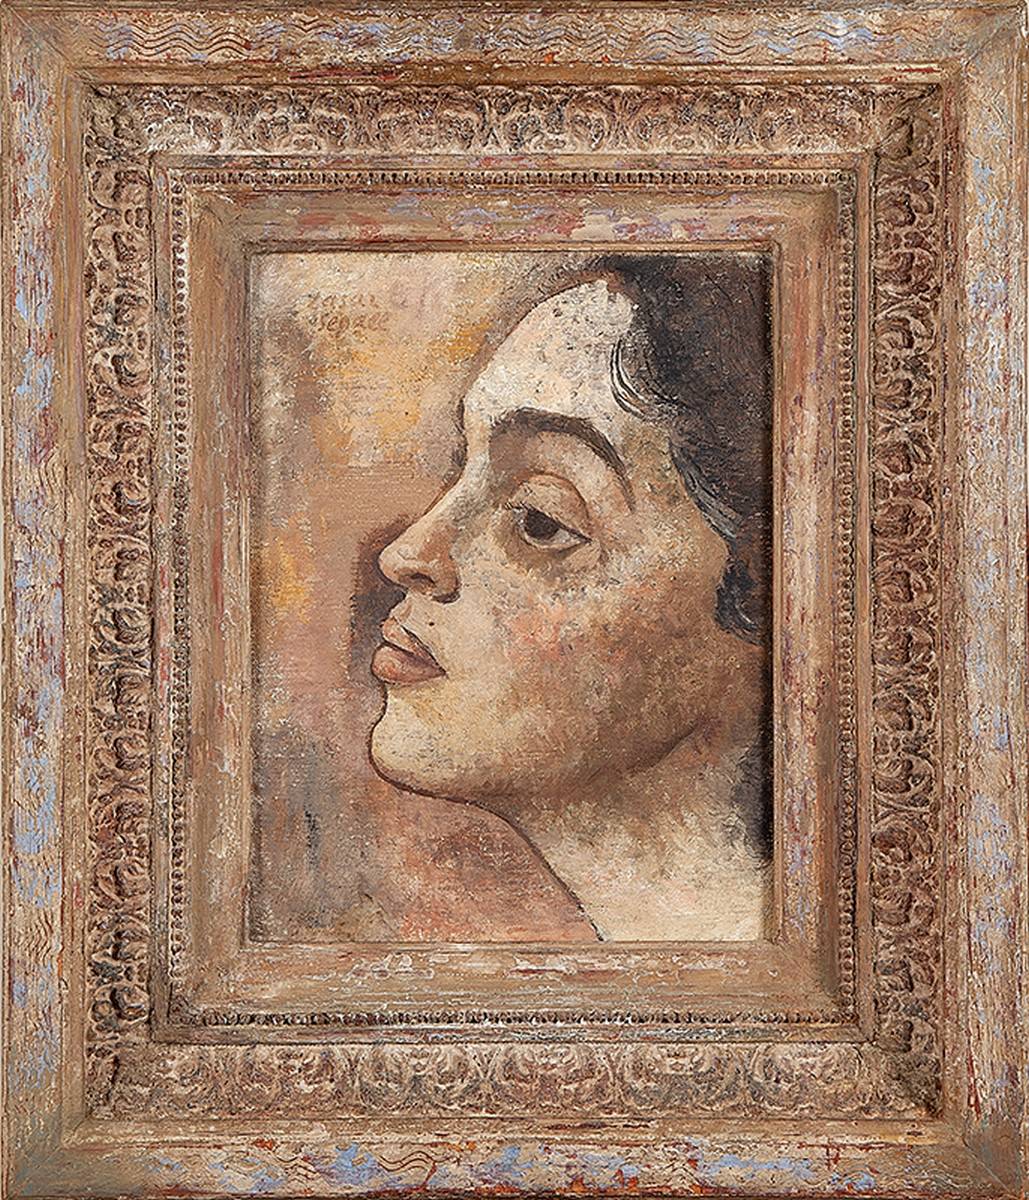 LASAR SEGALL, Retrato de Lucy. Ost, 33 x 40. Firmado en el cse y fechado 1936.